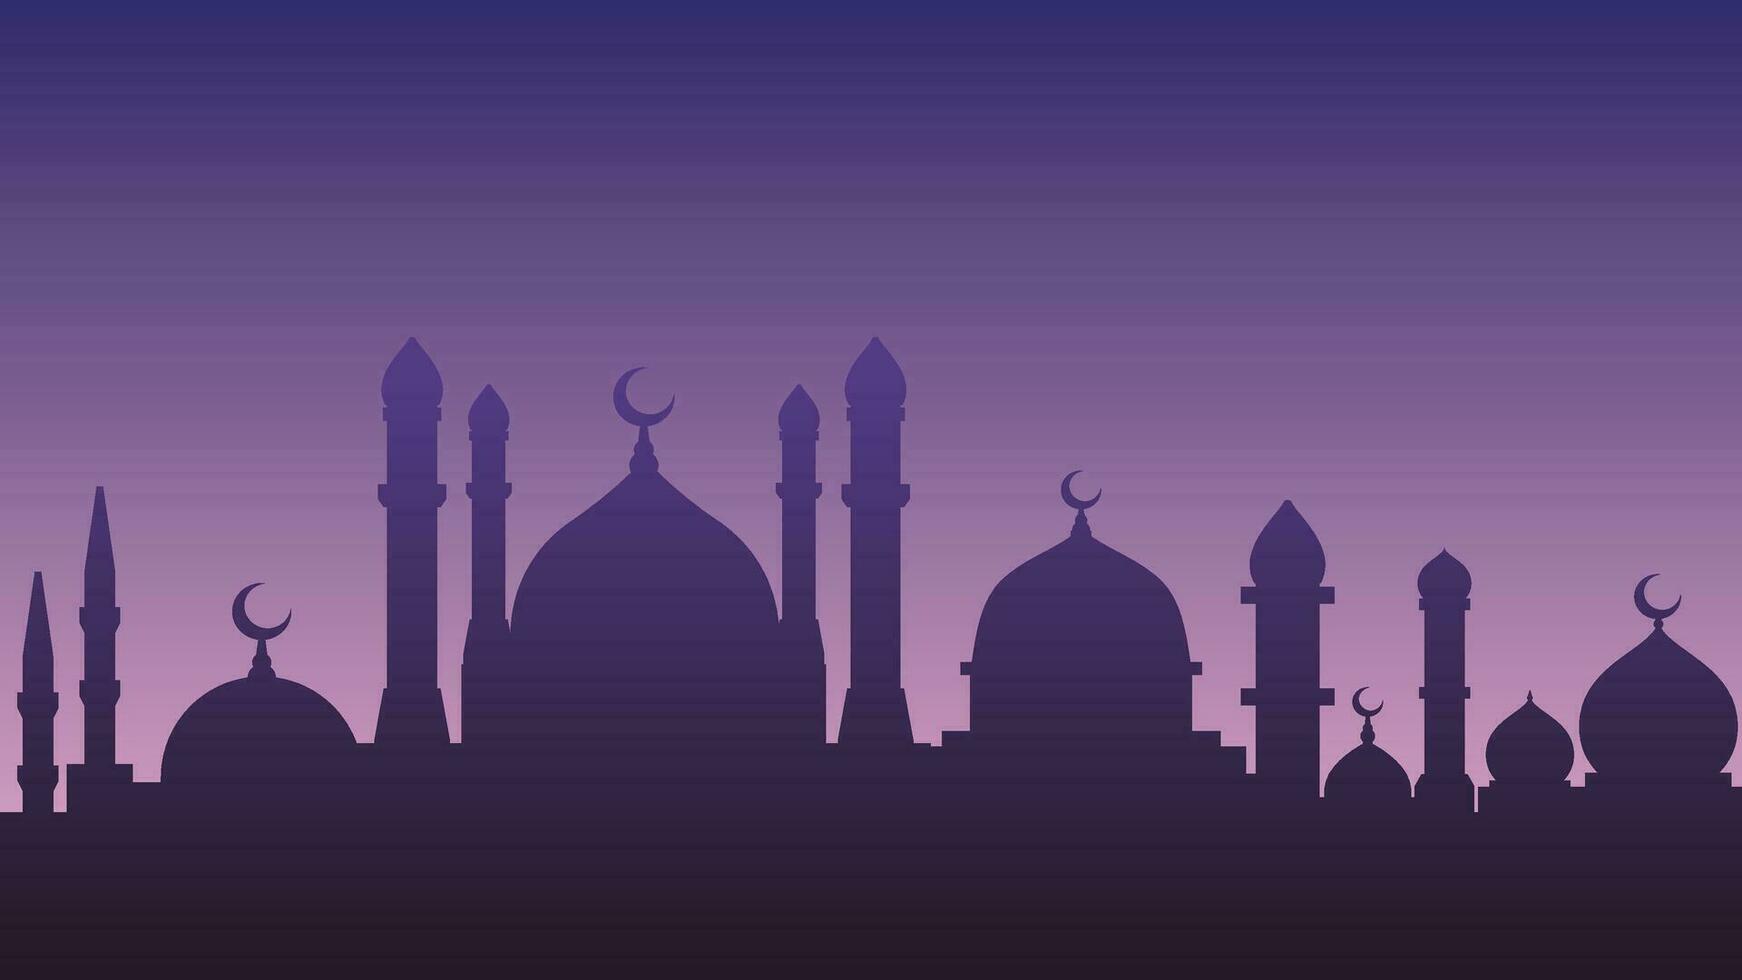 mosquée paysage vecteur illustration. mosquées bâtiment silhouette pour eid mubarak salutation carte. Ramadan conception graphique dans musulman culture et Islam religion. paysage urbain de islamique culte endroit